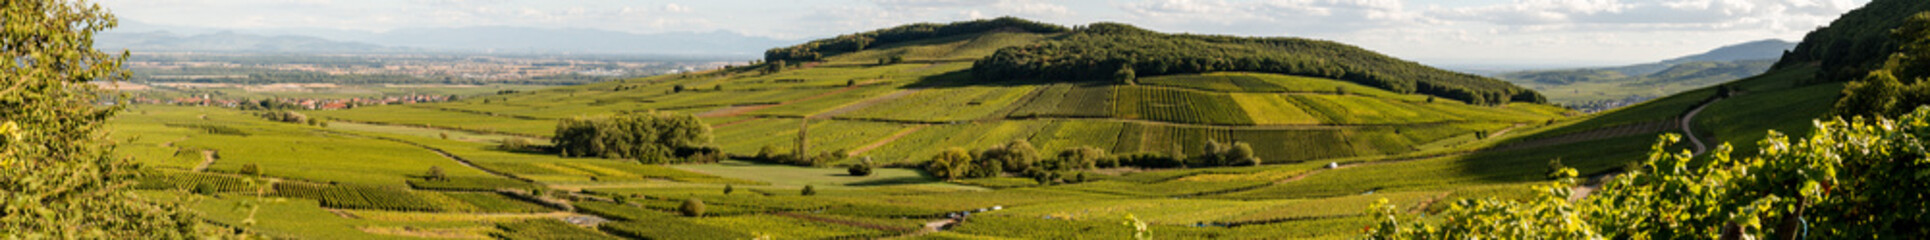 Vendanges dans le vignoble alsacien, sur la Route des vins d'Alsace